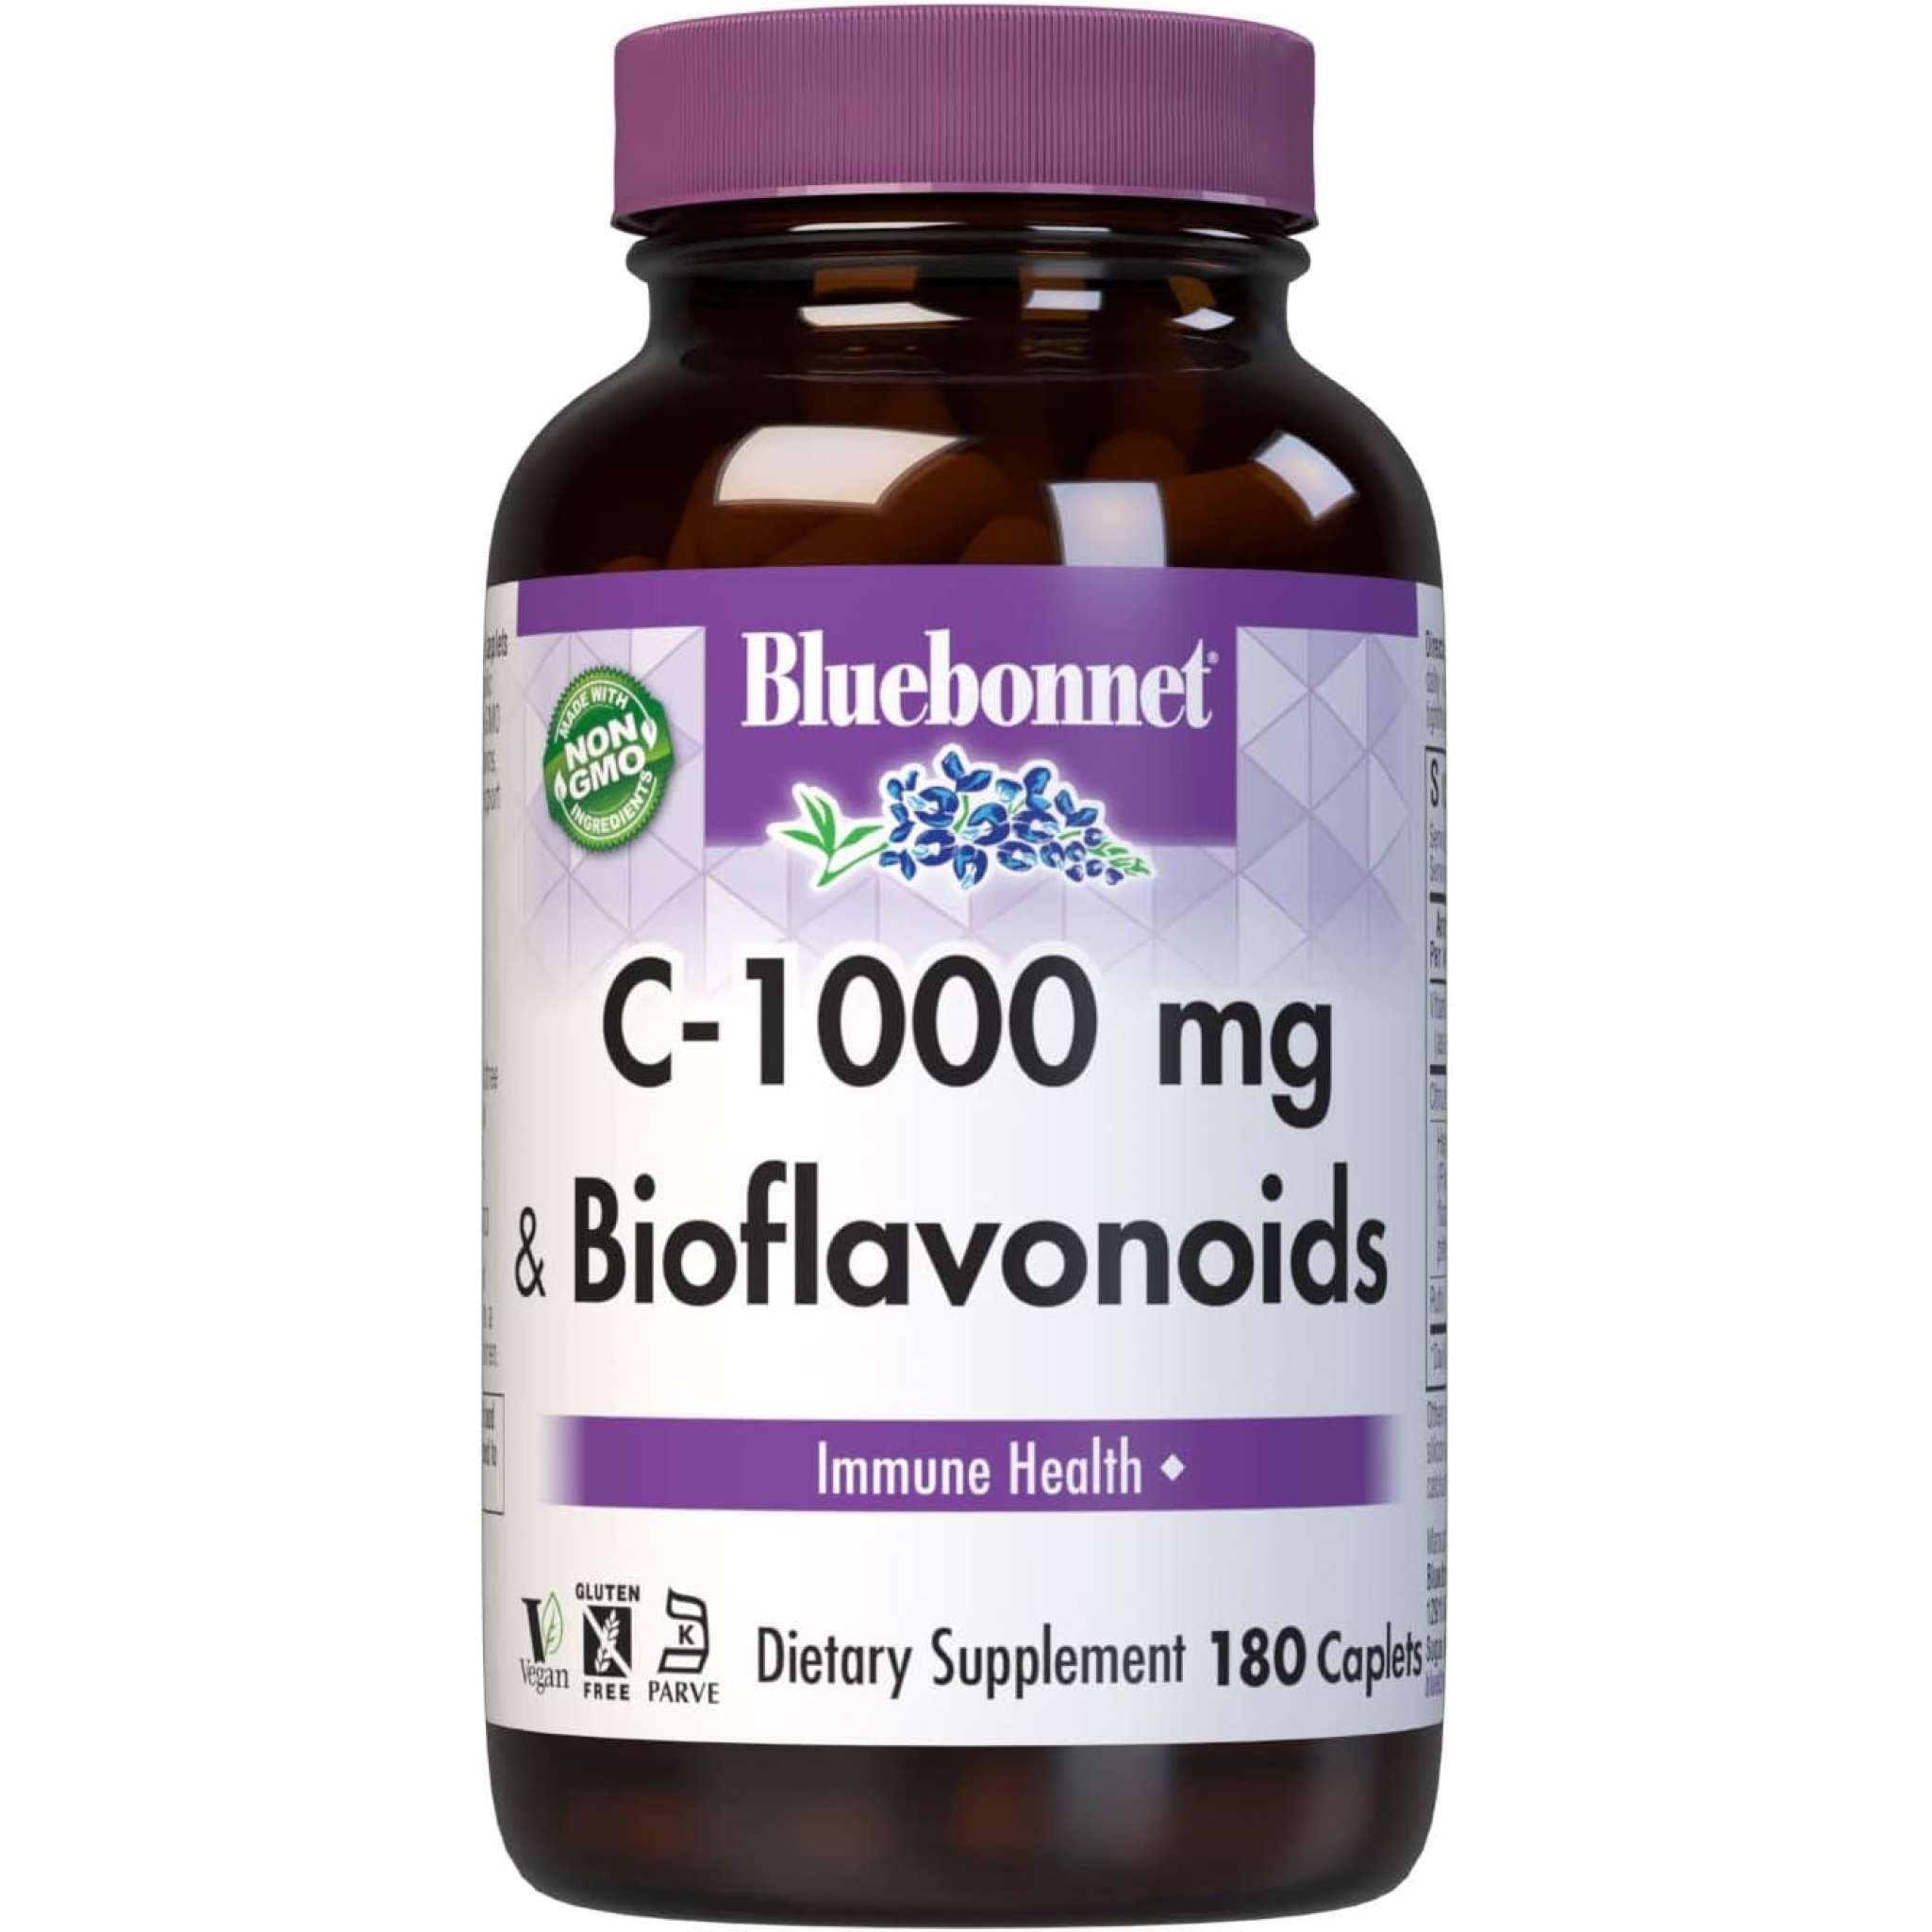 Bluebonnet - C 1000 mg Plus Bioflavoniods